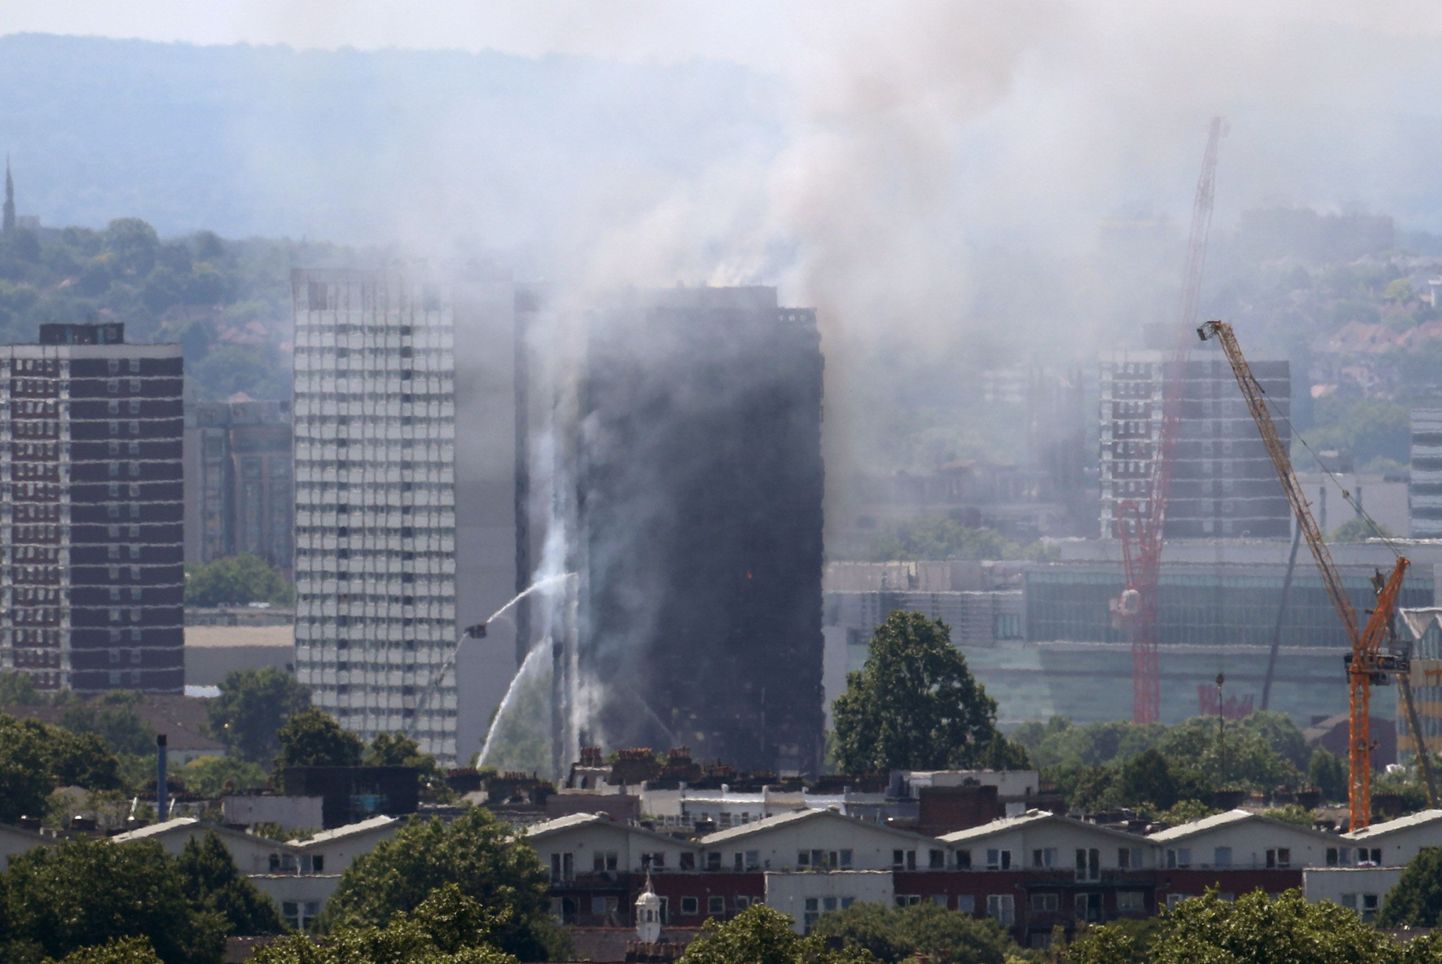 Ööl vastu 14. juunit puhkes Londoni kõrghoones tulekahju, hukkus vähemalt kuus inimest. Hoone 17. korrusel elanud Methrob ütles LBC raadiole, et majas puudus tuletõrjealarm.